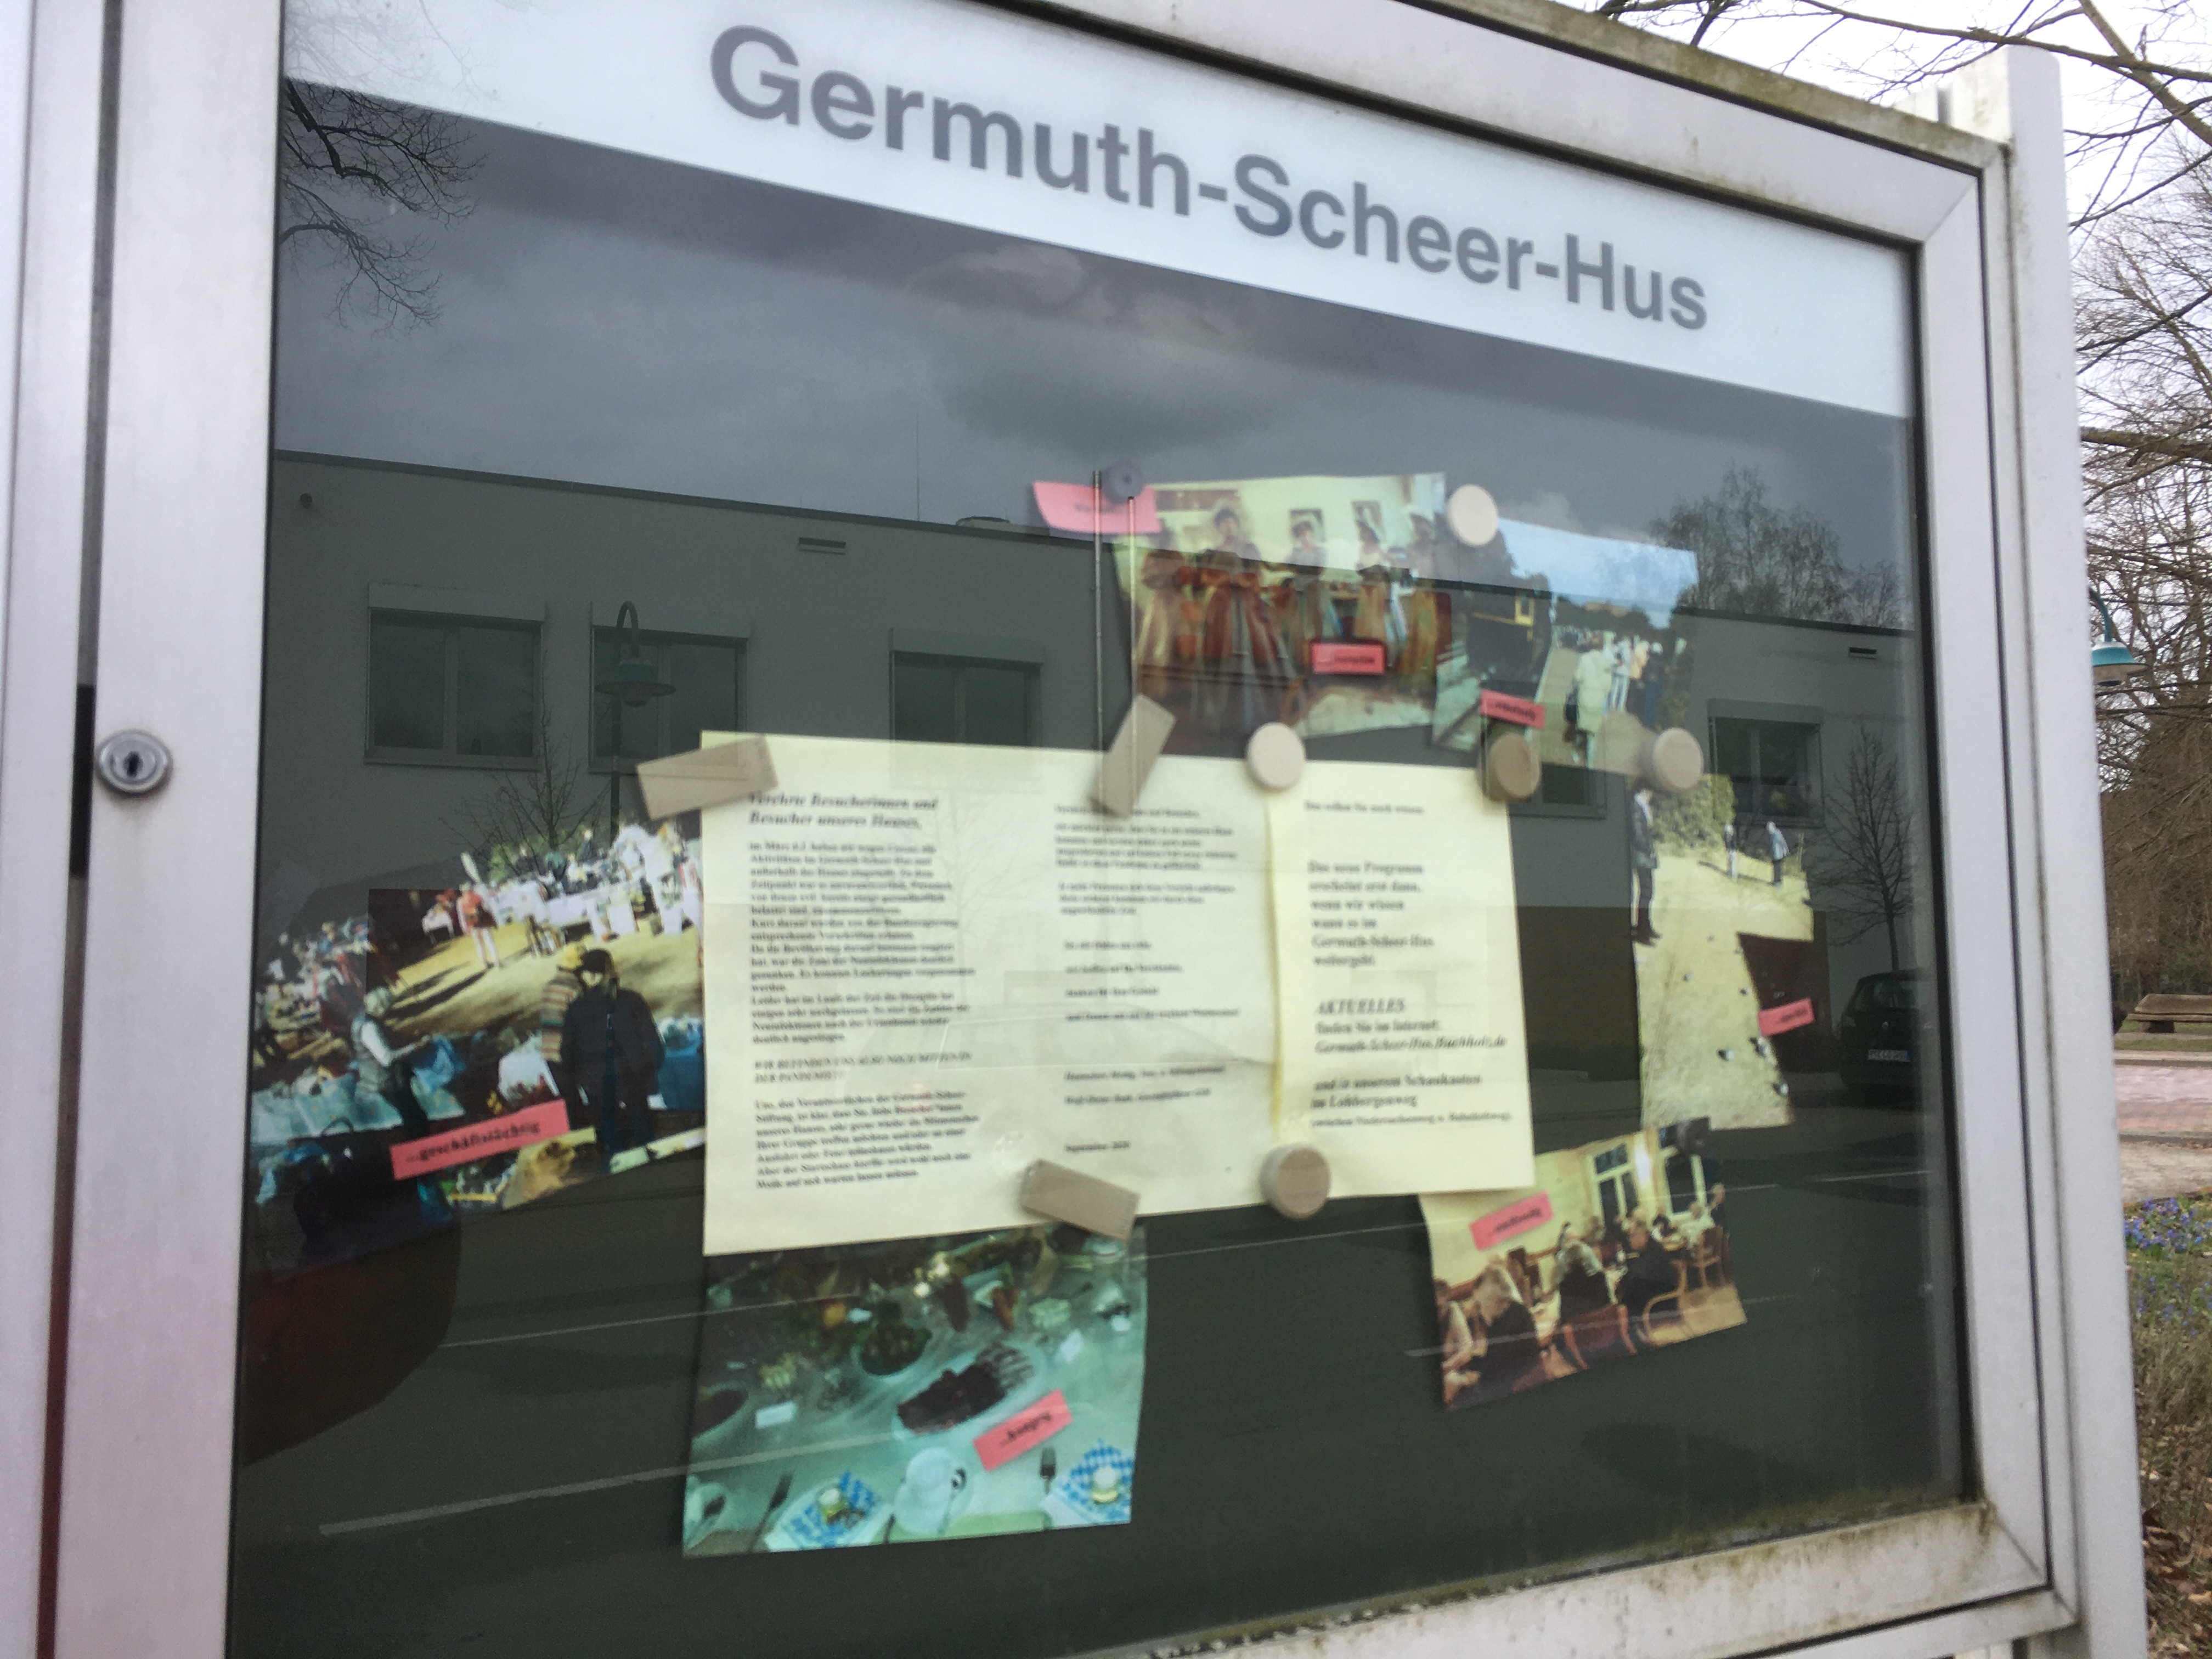 Germuth-Scheer-Hus